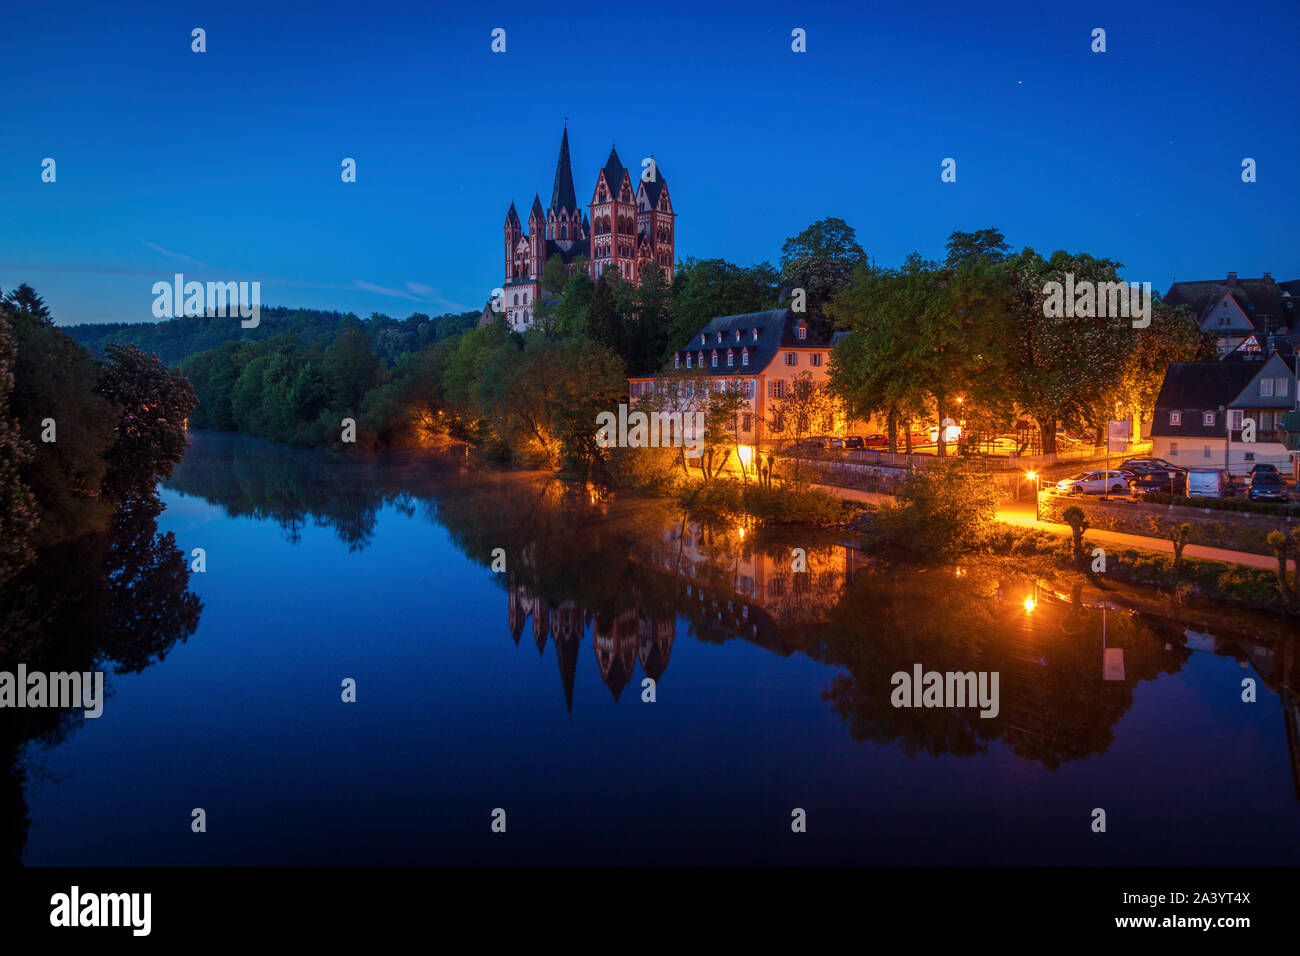 La Catedral de Limburgo por río de noche en Limburgo, Alemania Foto de stock